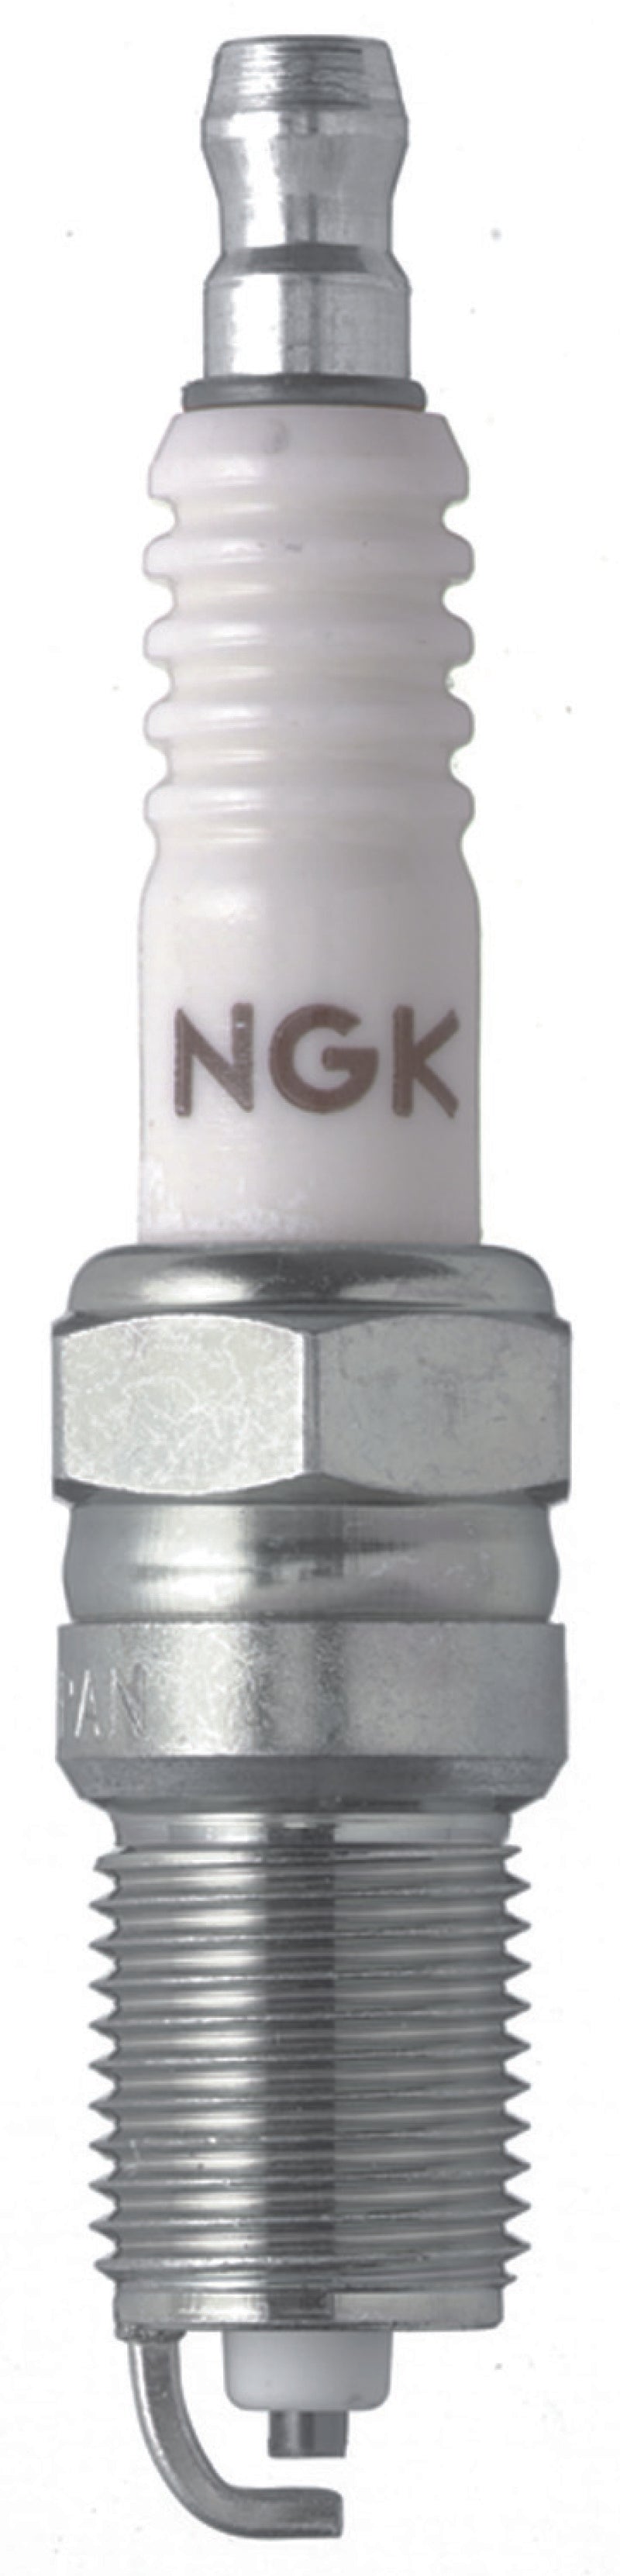 NGK Nickel Spark Plug Box of 4 (R5724-8)